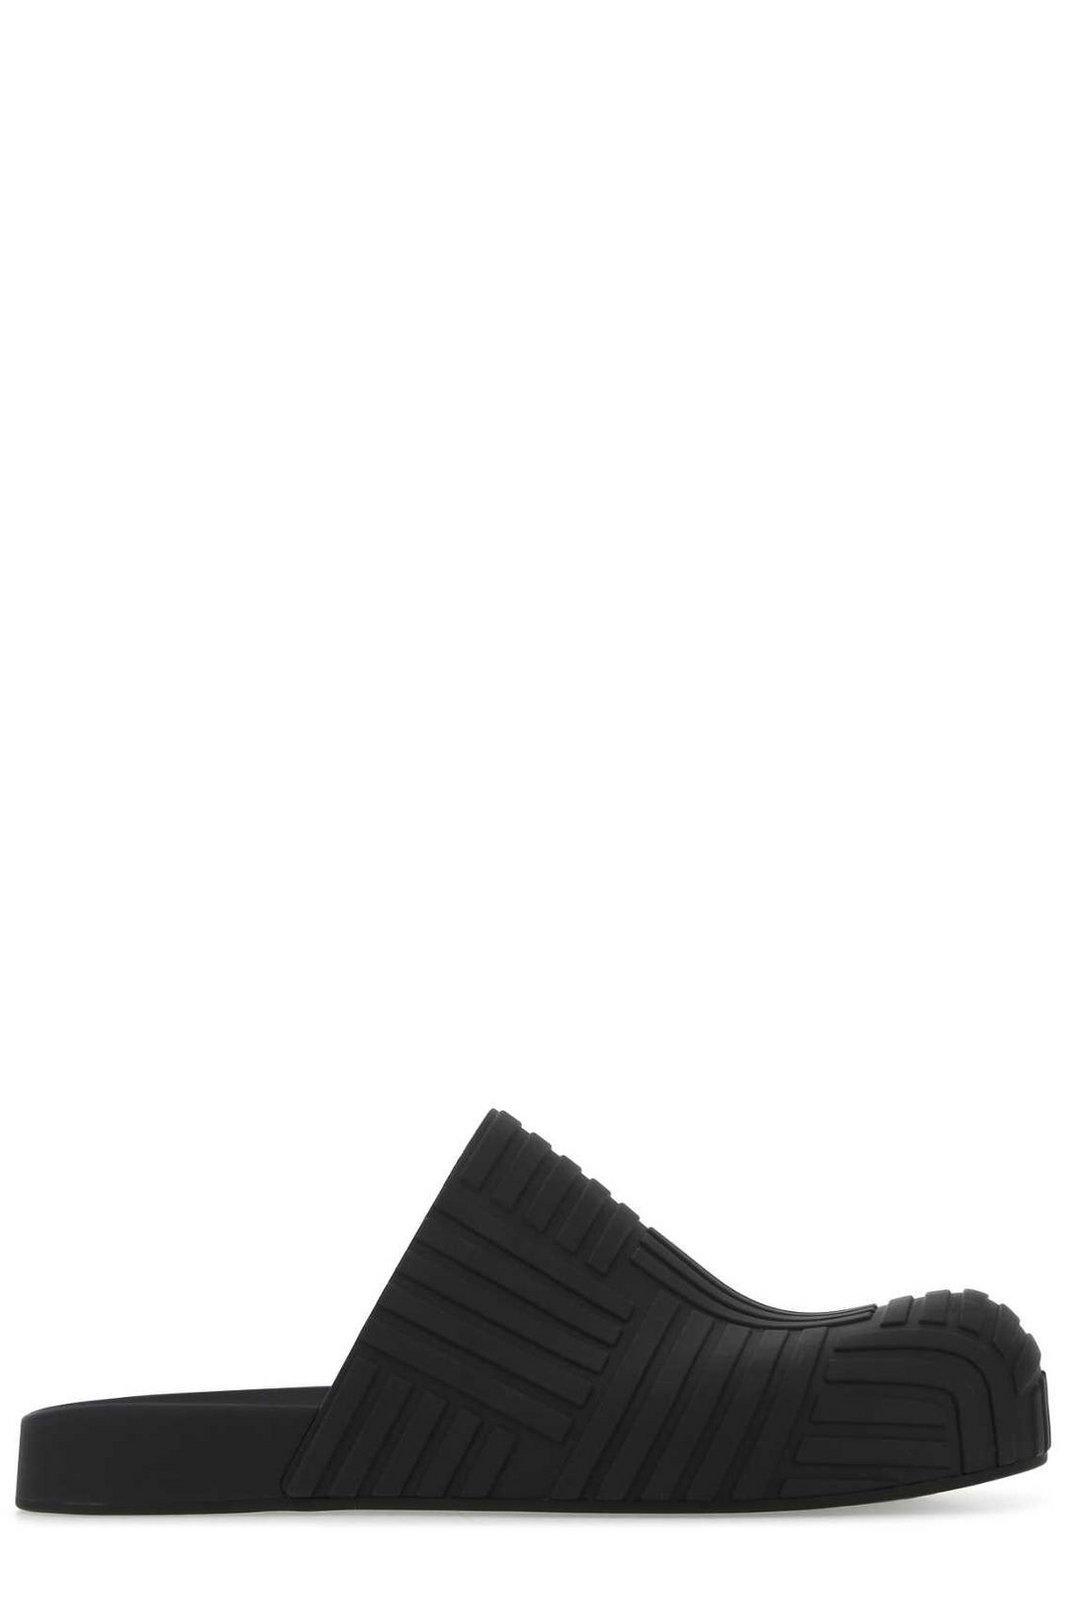 Bottega Veneta Embossed Rubber Clogs in Black for Men Mens Shoes Slip-on shoes Slippers 